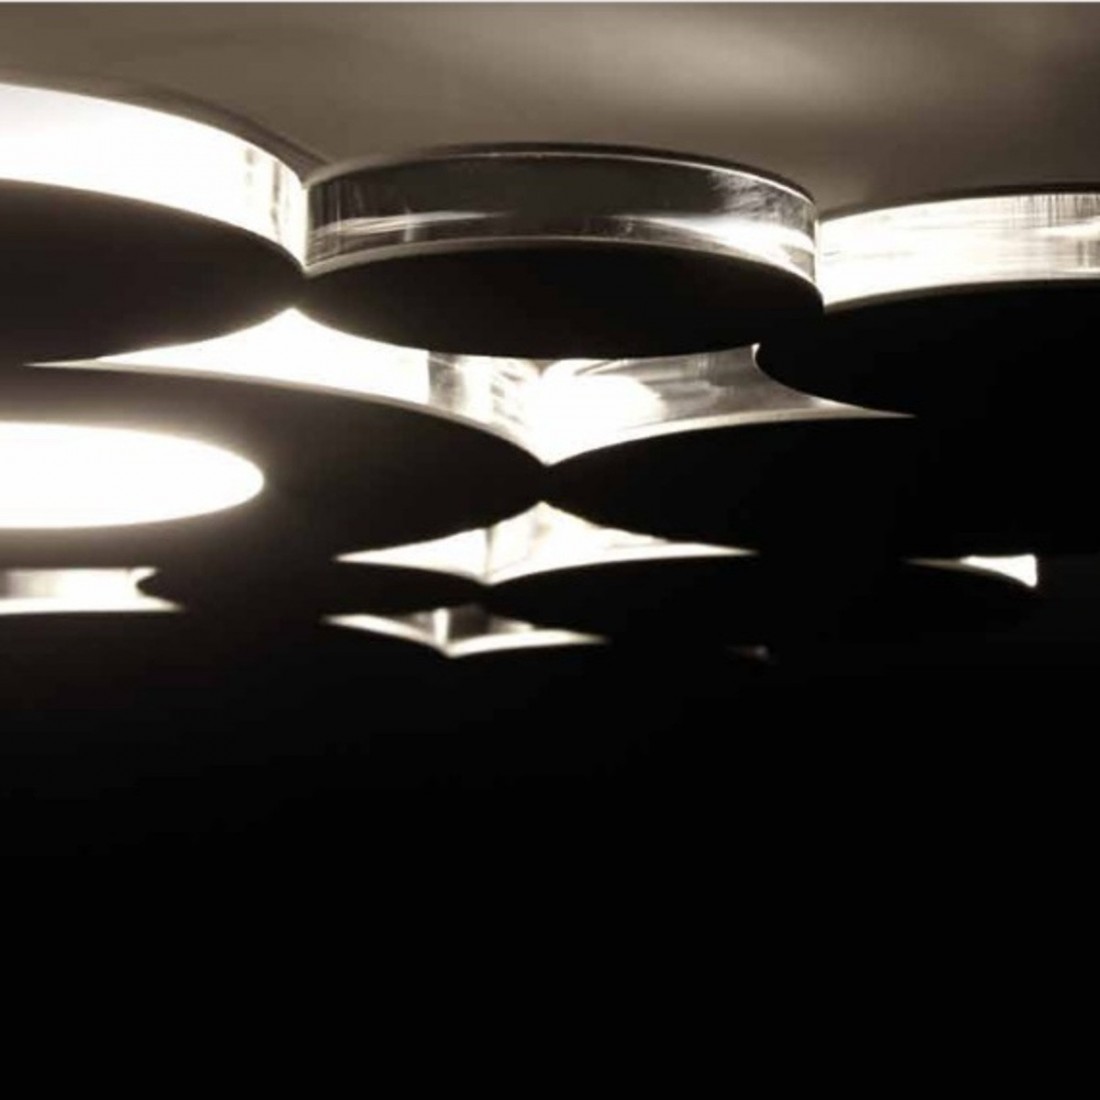 Plafoniera CO-BOLLE 755 30 PA 17W LED 1500LM 3000°K dimmerabile metallo bianco sabbia grigio lampada soffitto moderna interno